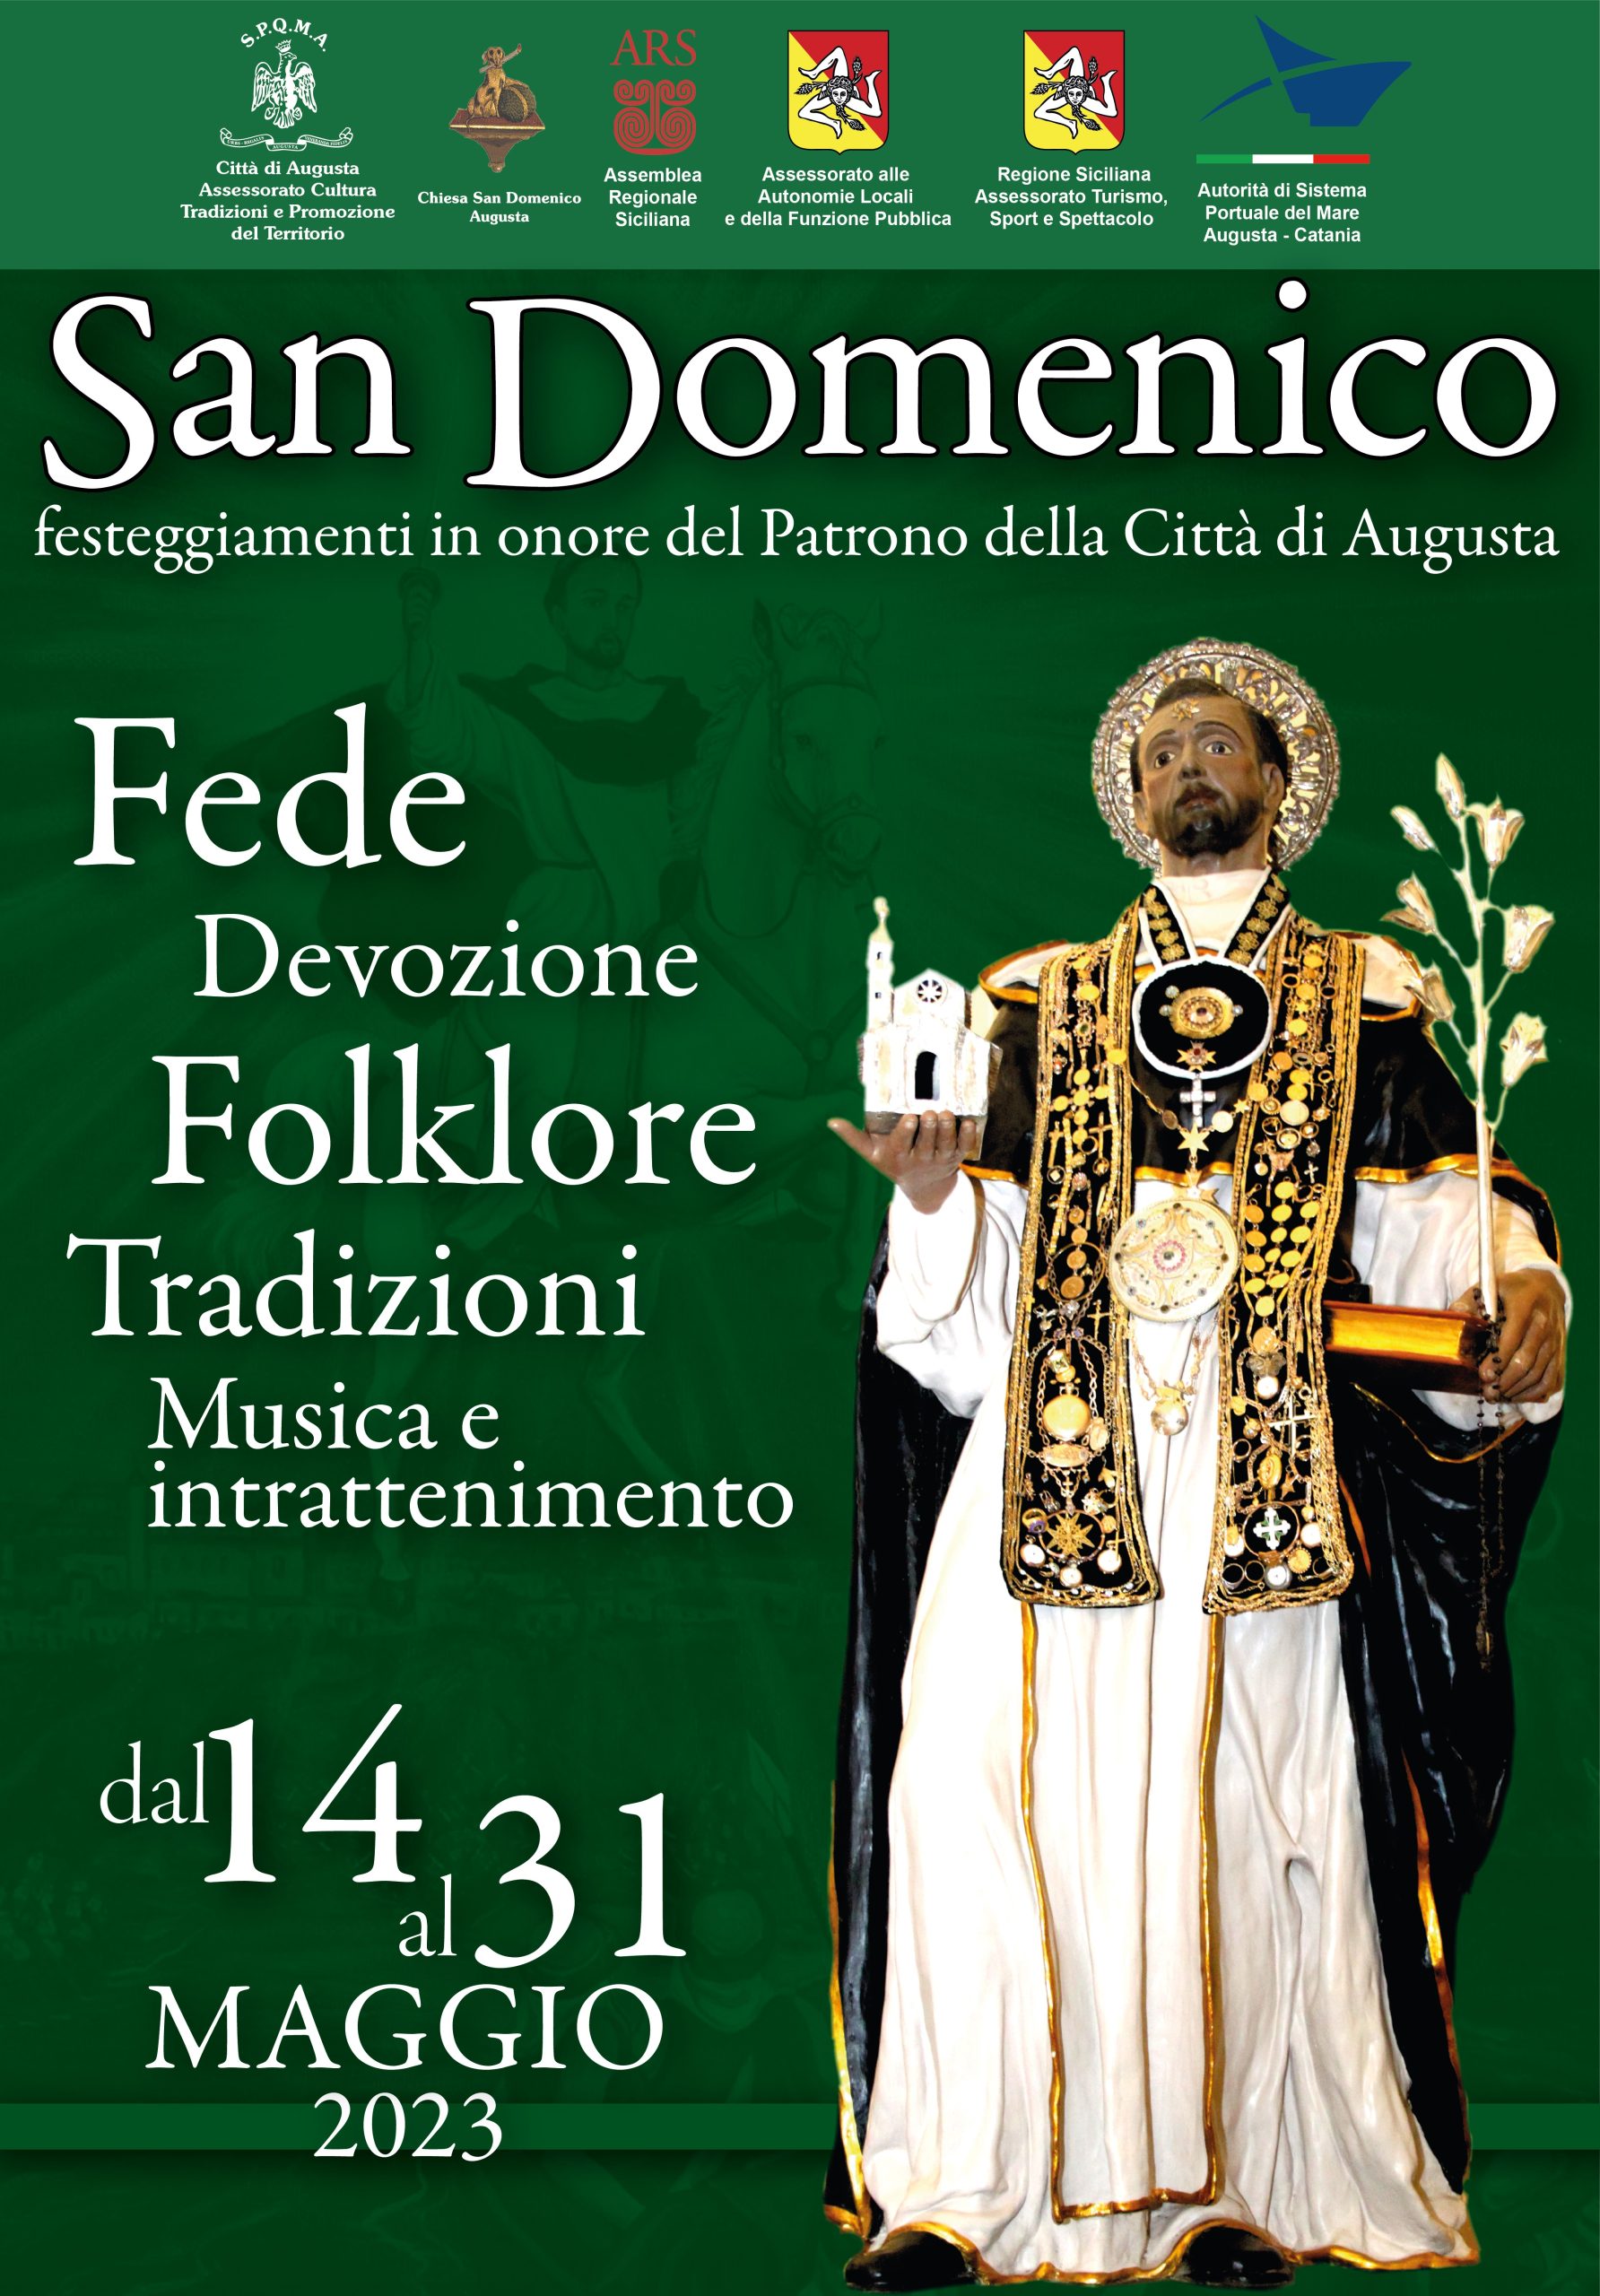 San Domenico – Festeggiamenti in onore del Patrono della Città di Augusta